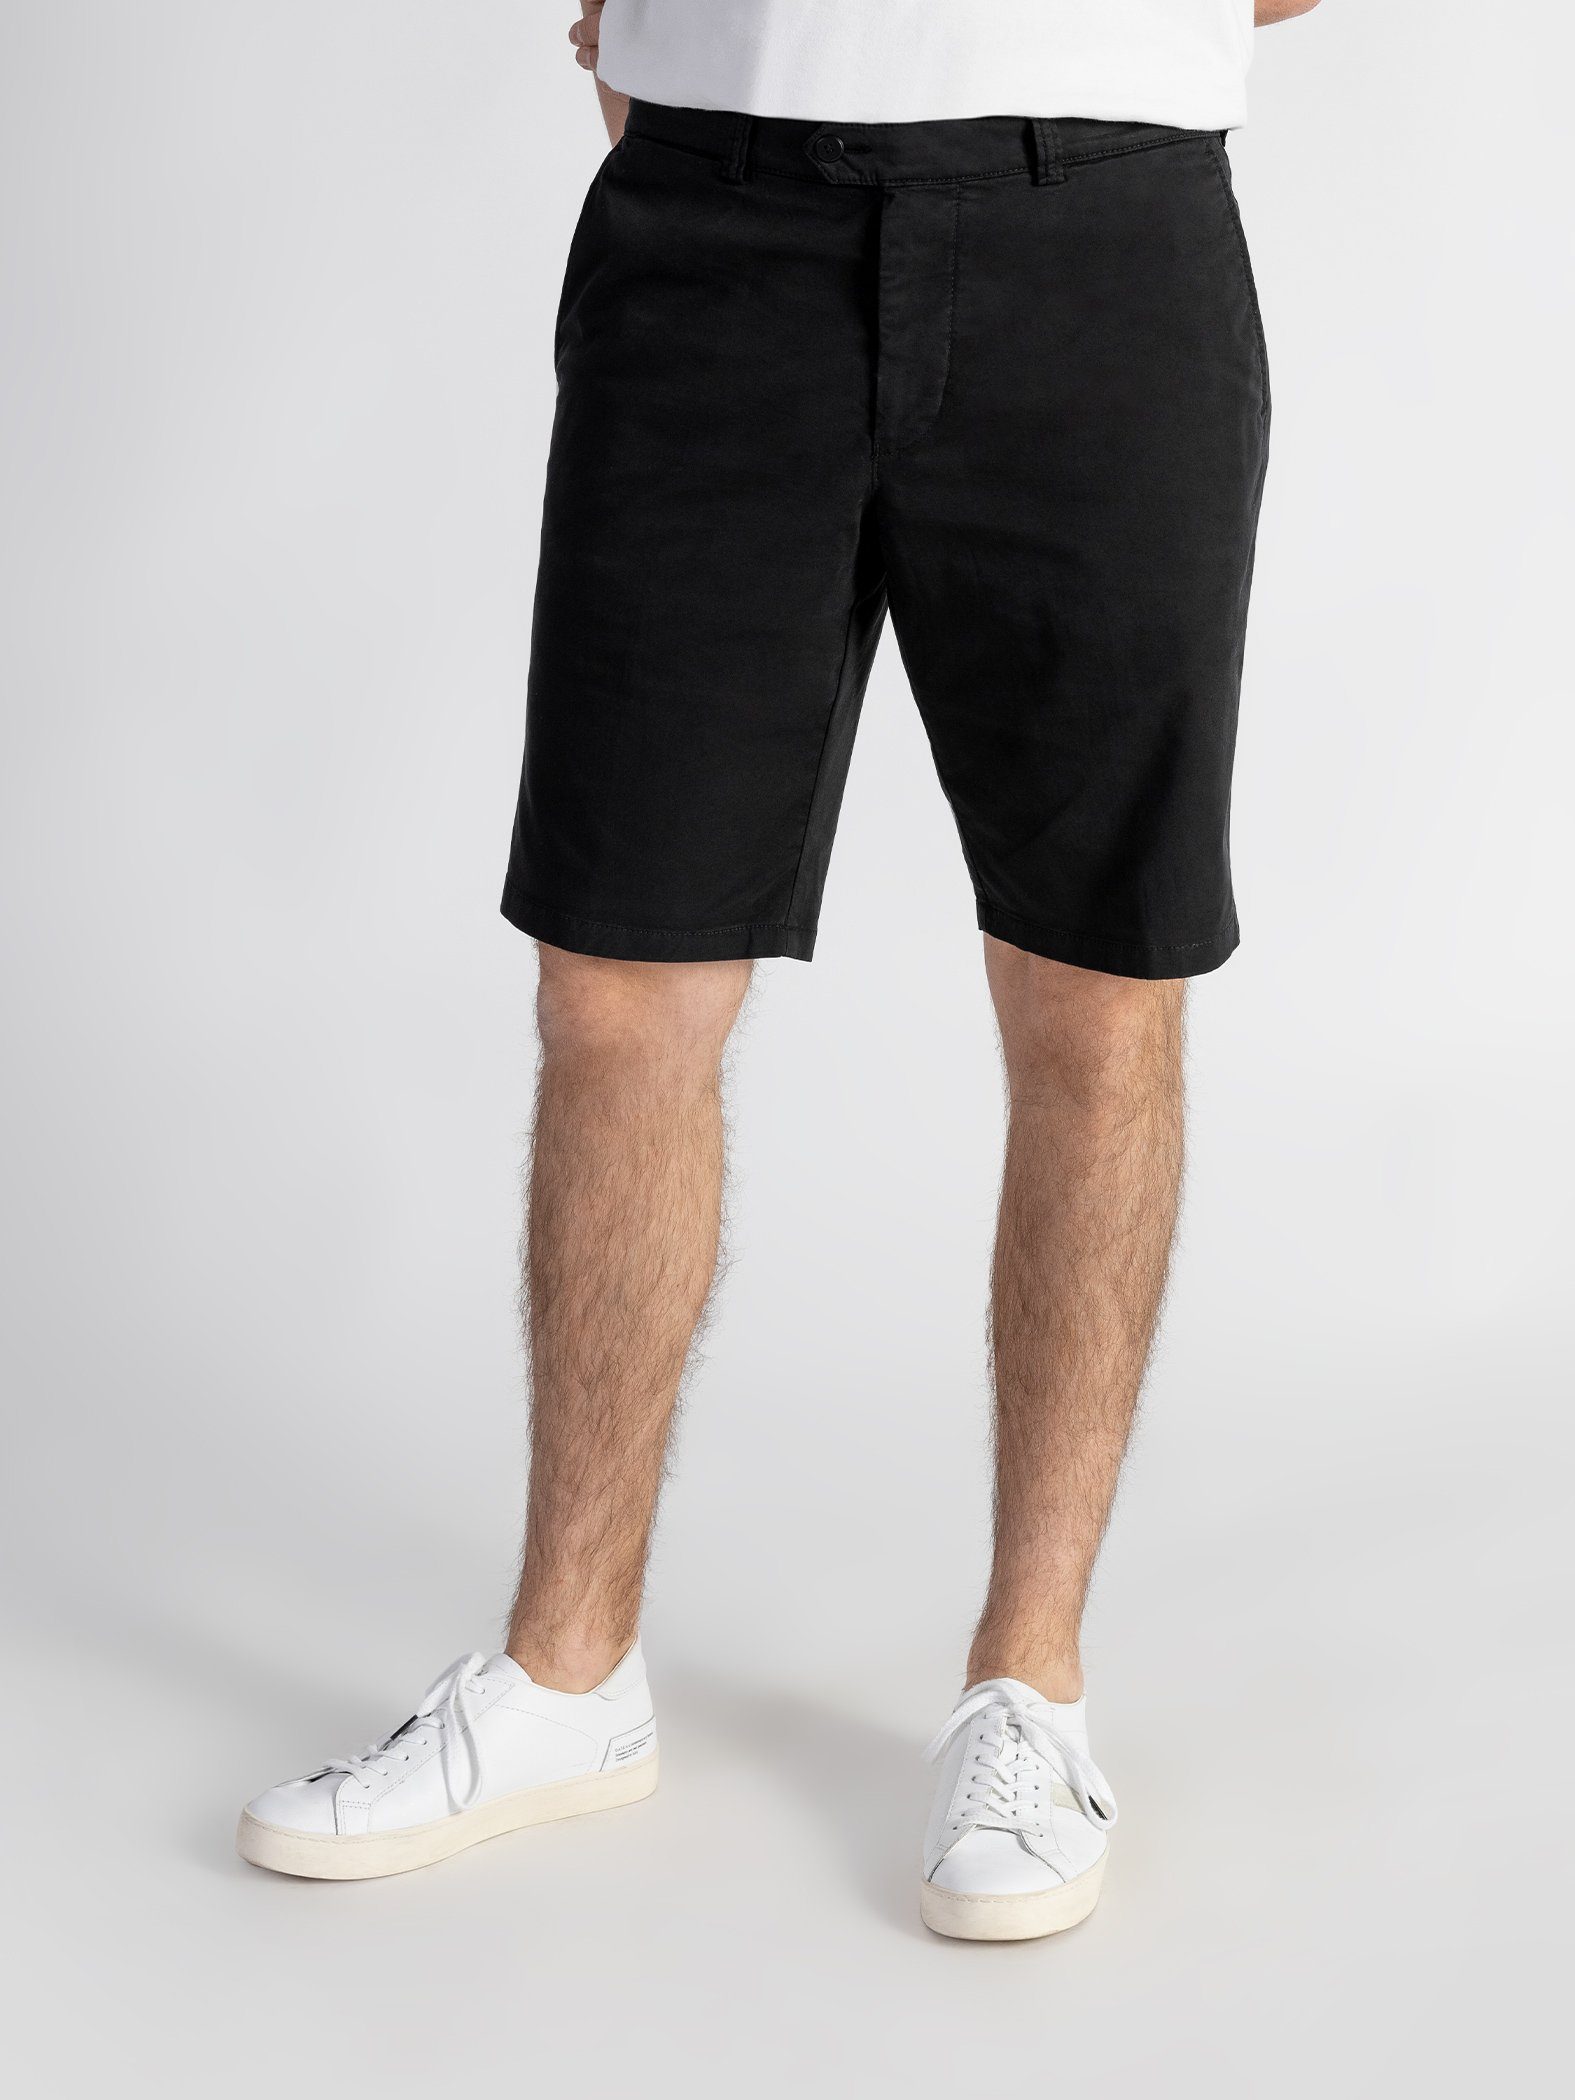 Shorts Bund, Schwarz GOTS-zertifiziert elastischem TwoMates Shorts mit Farbauswahl,